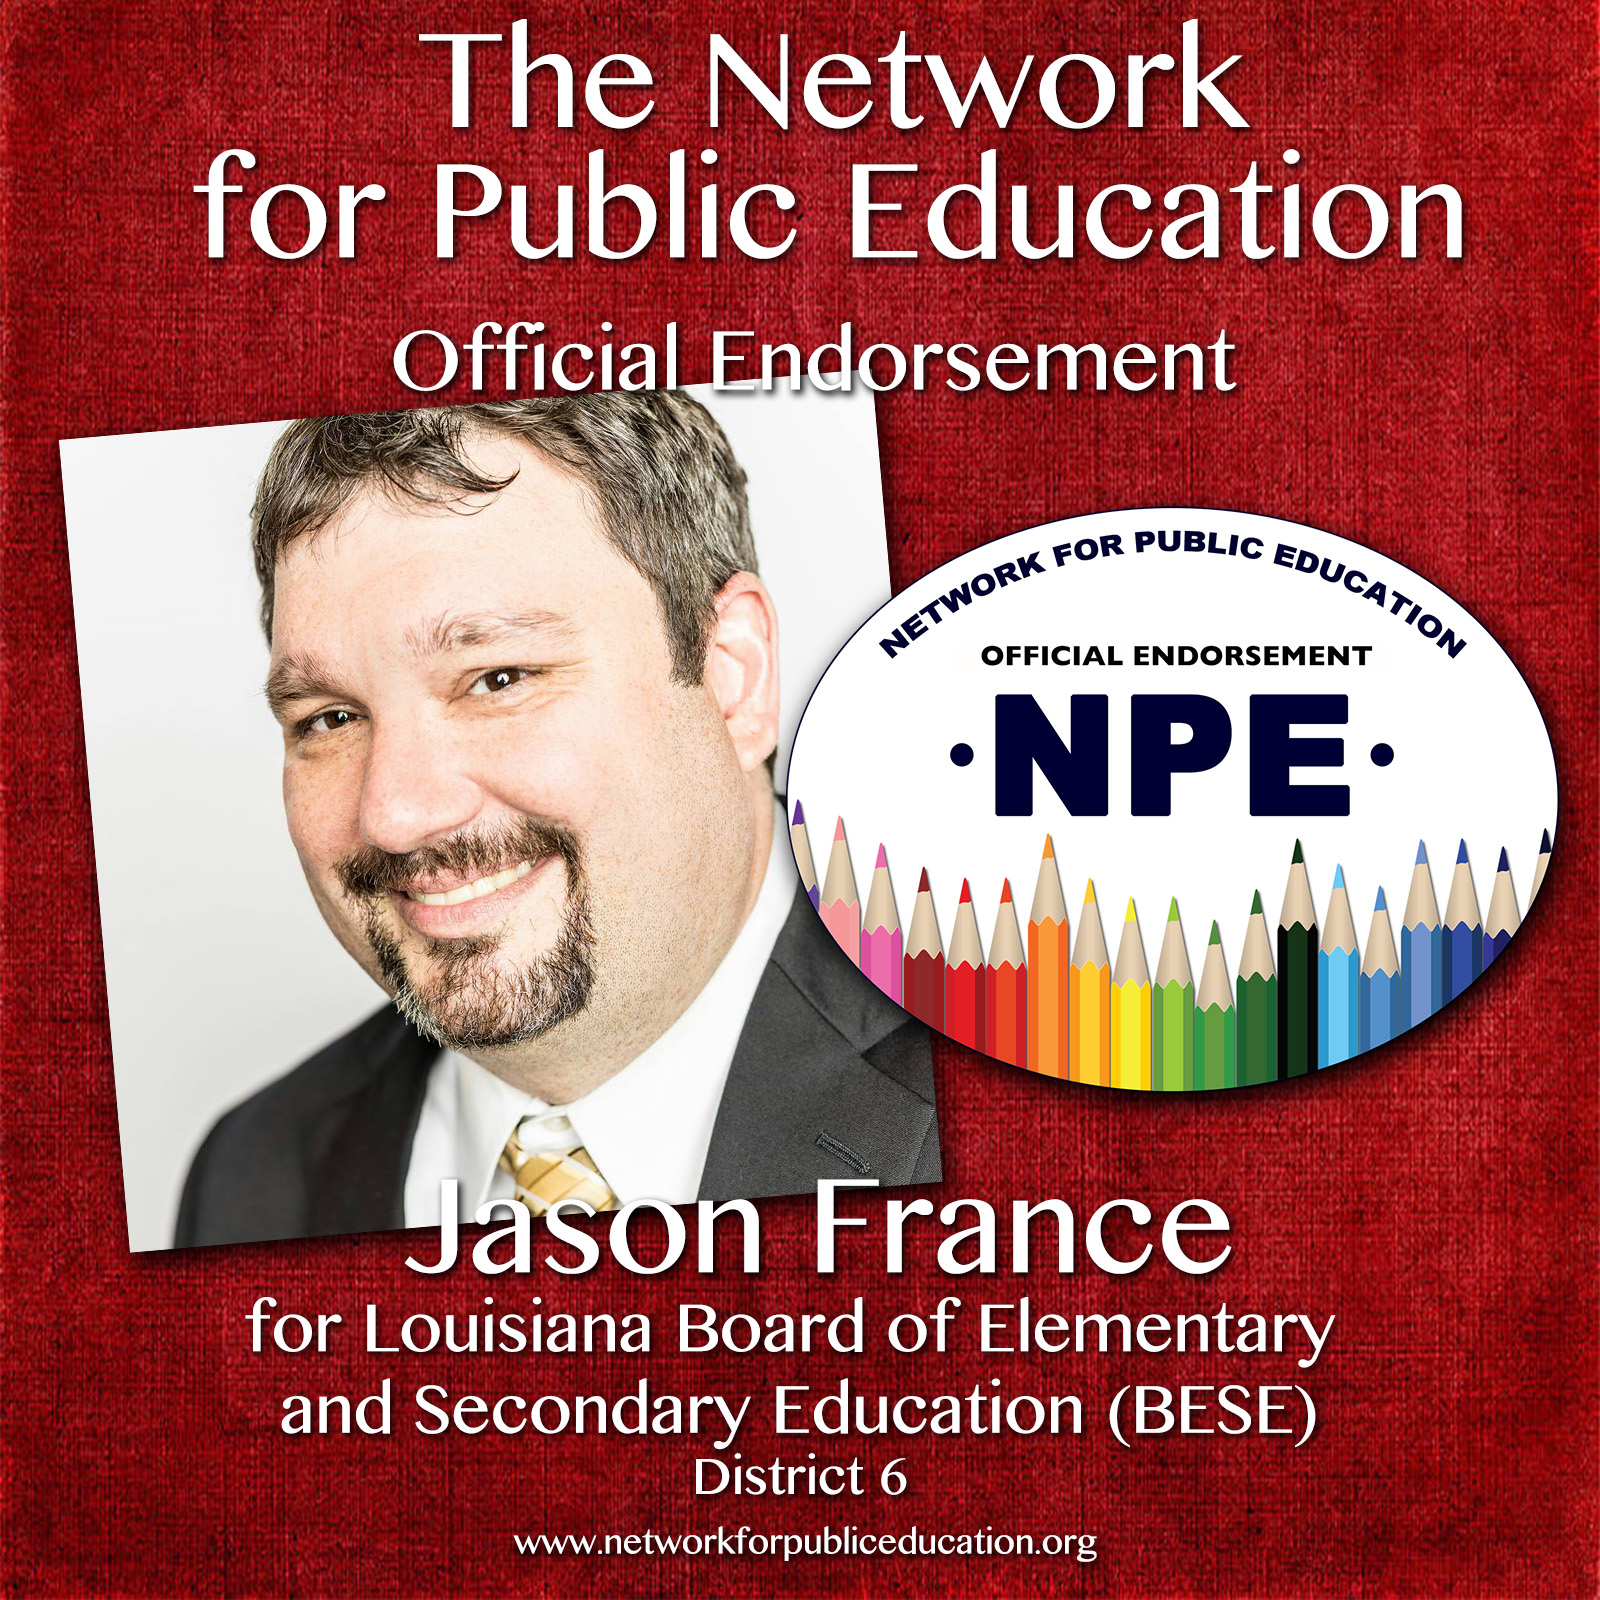 Jason France Endorsement Graphic